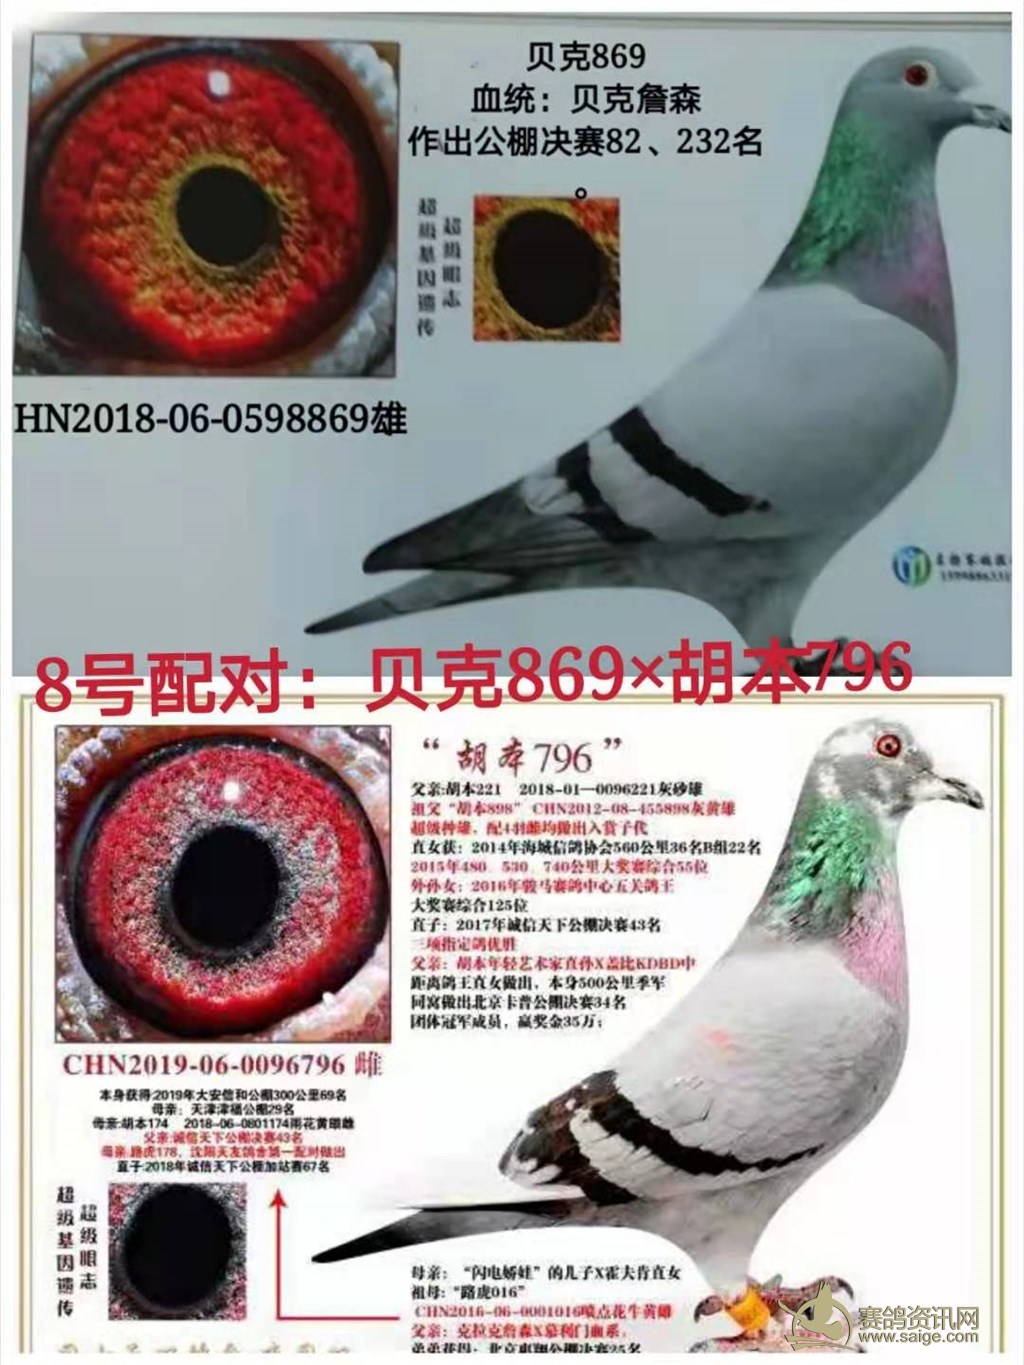 再来一组超级种鸽眼-中国信鸽信息网相册